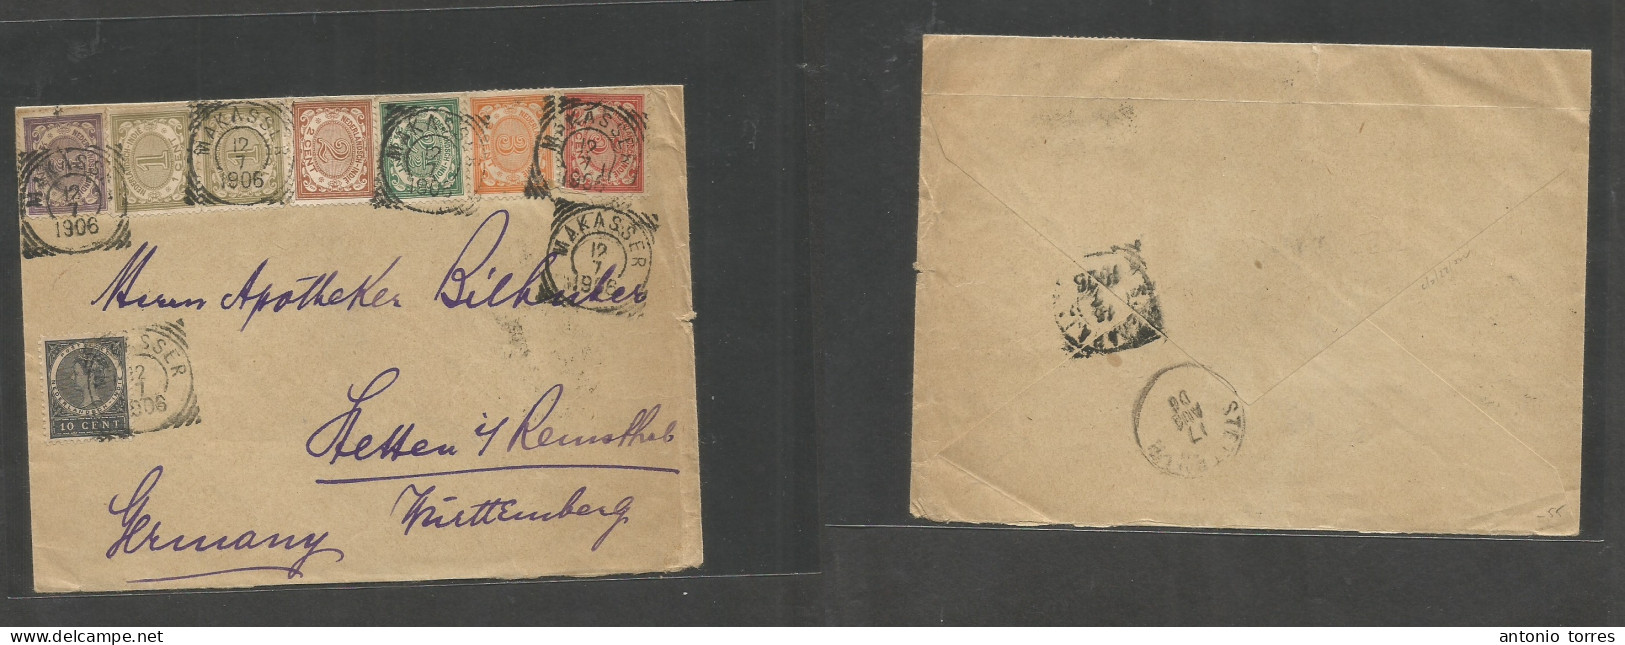 Dutch Indies. 1906 (12 July) Makasser - Germany, Hessen (17 Aug) Multicolor (8 Diff) Fkd Envelope, Tied Cds. VF. - Niederländisch-Indien